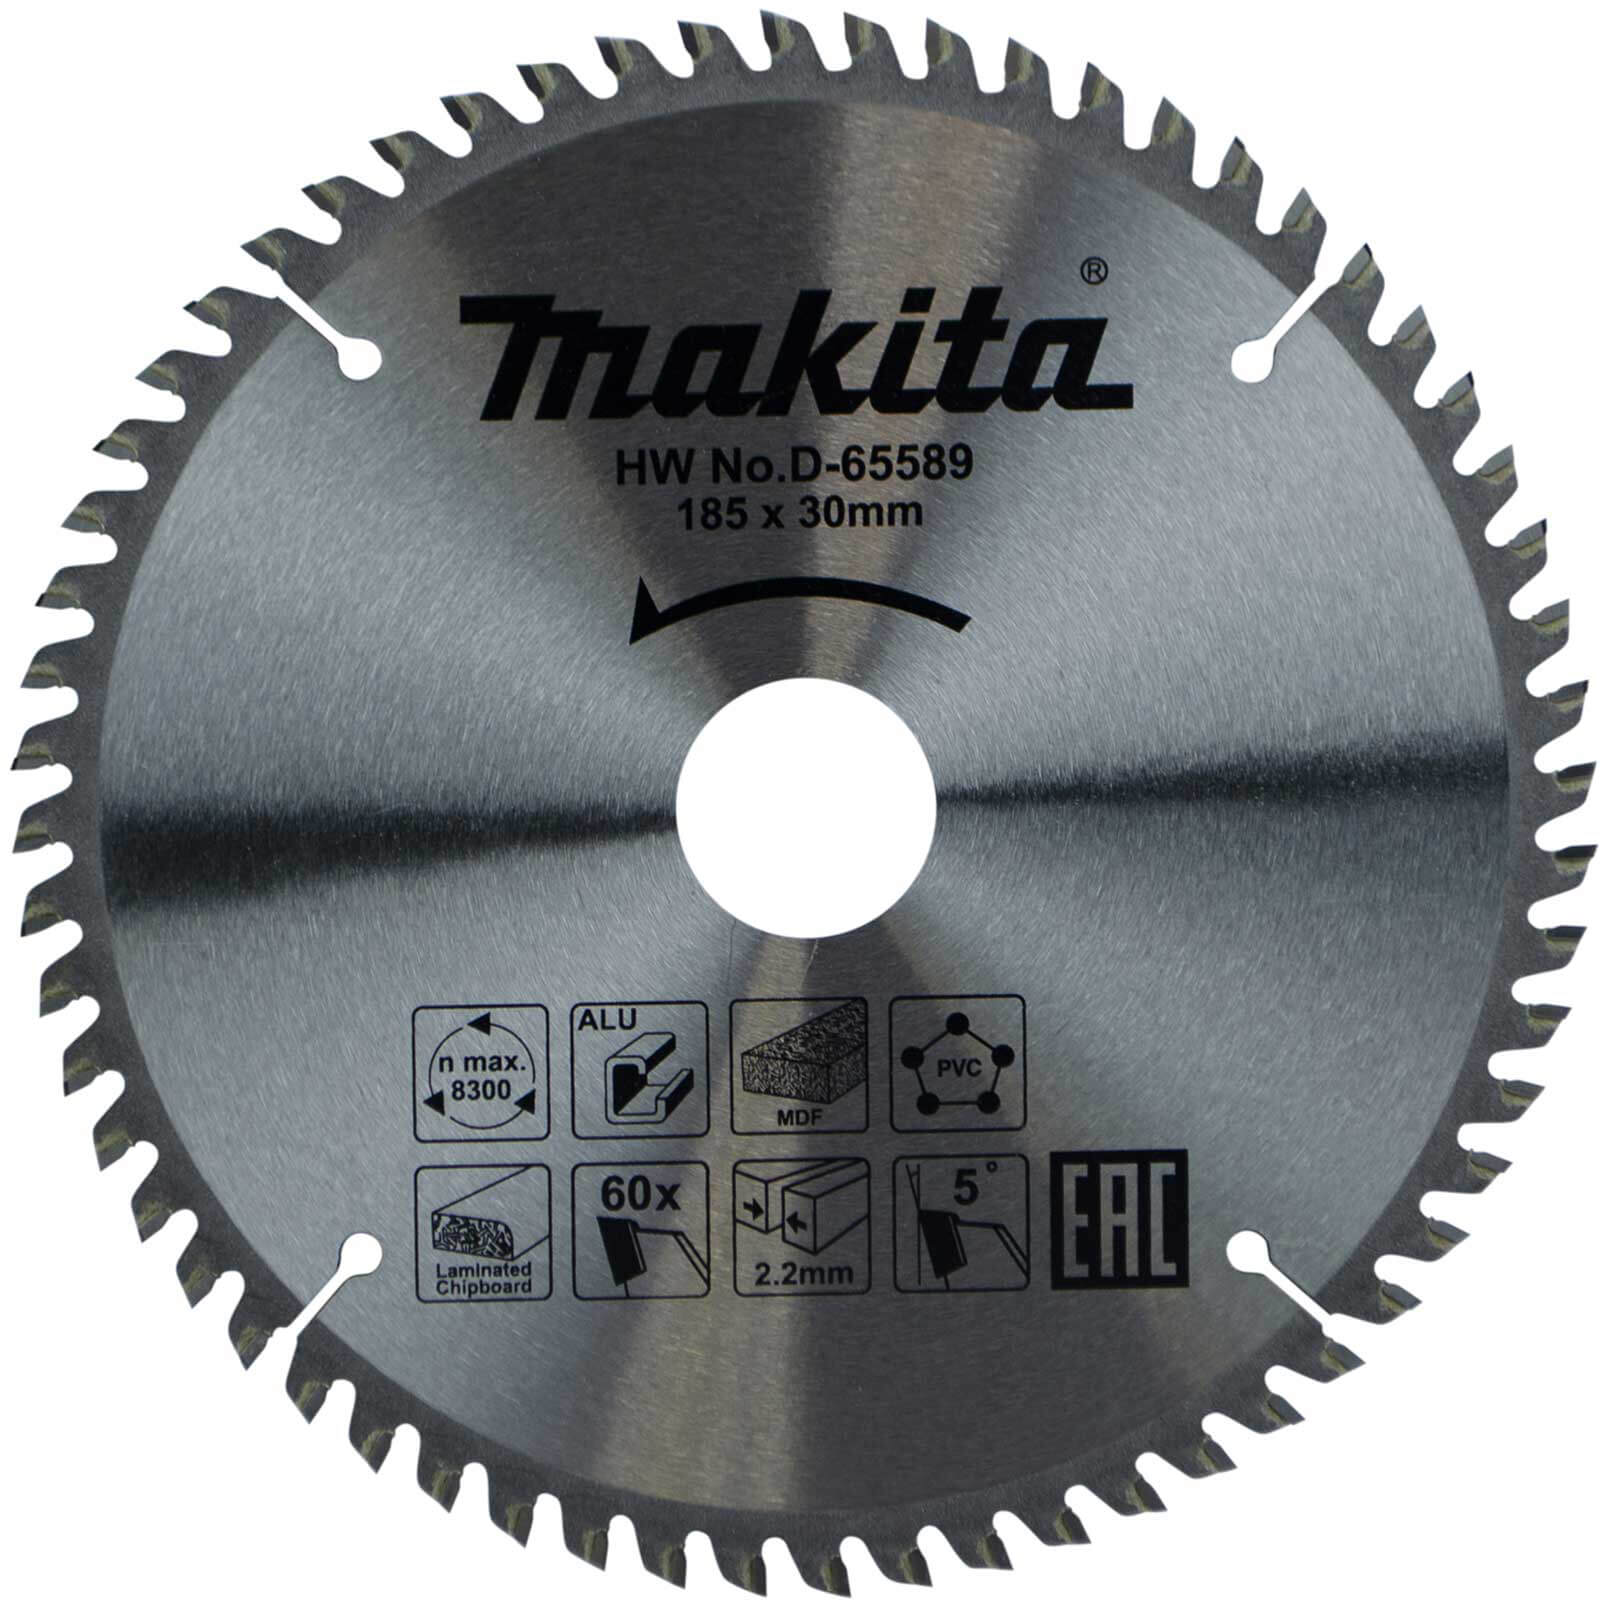 Photo of Makita Multi Purpose Circular Saw Blade 185mm 60t 30mm